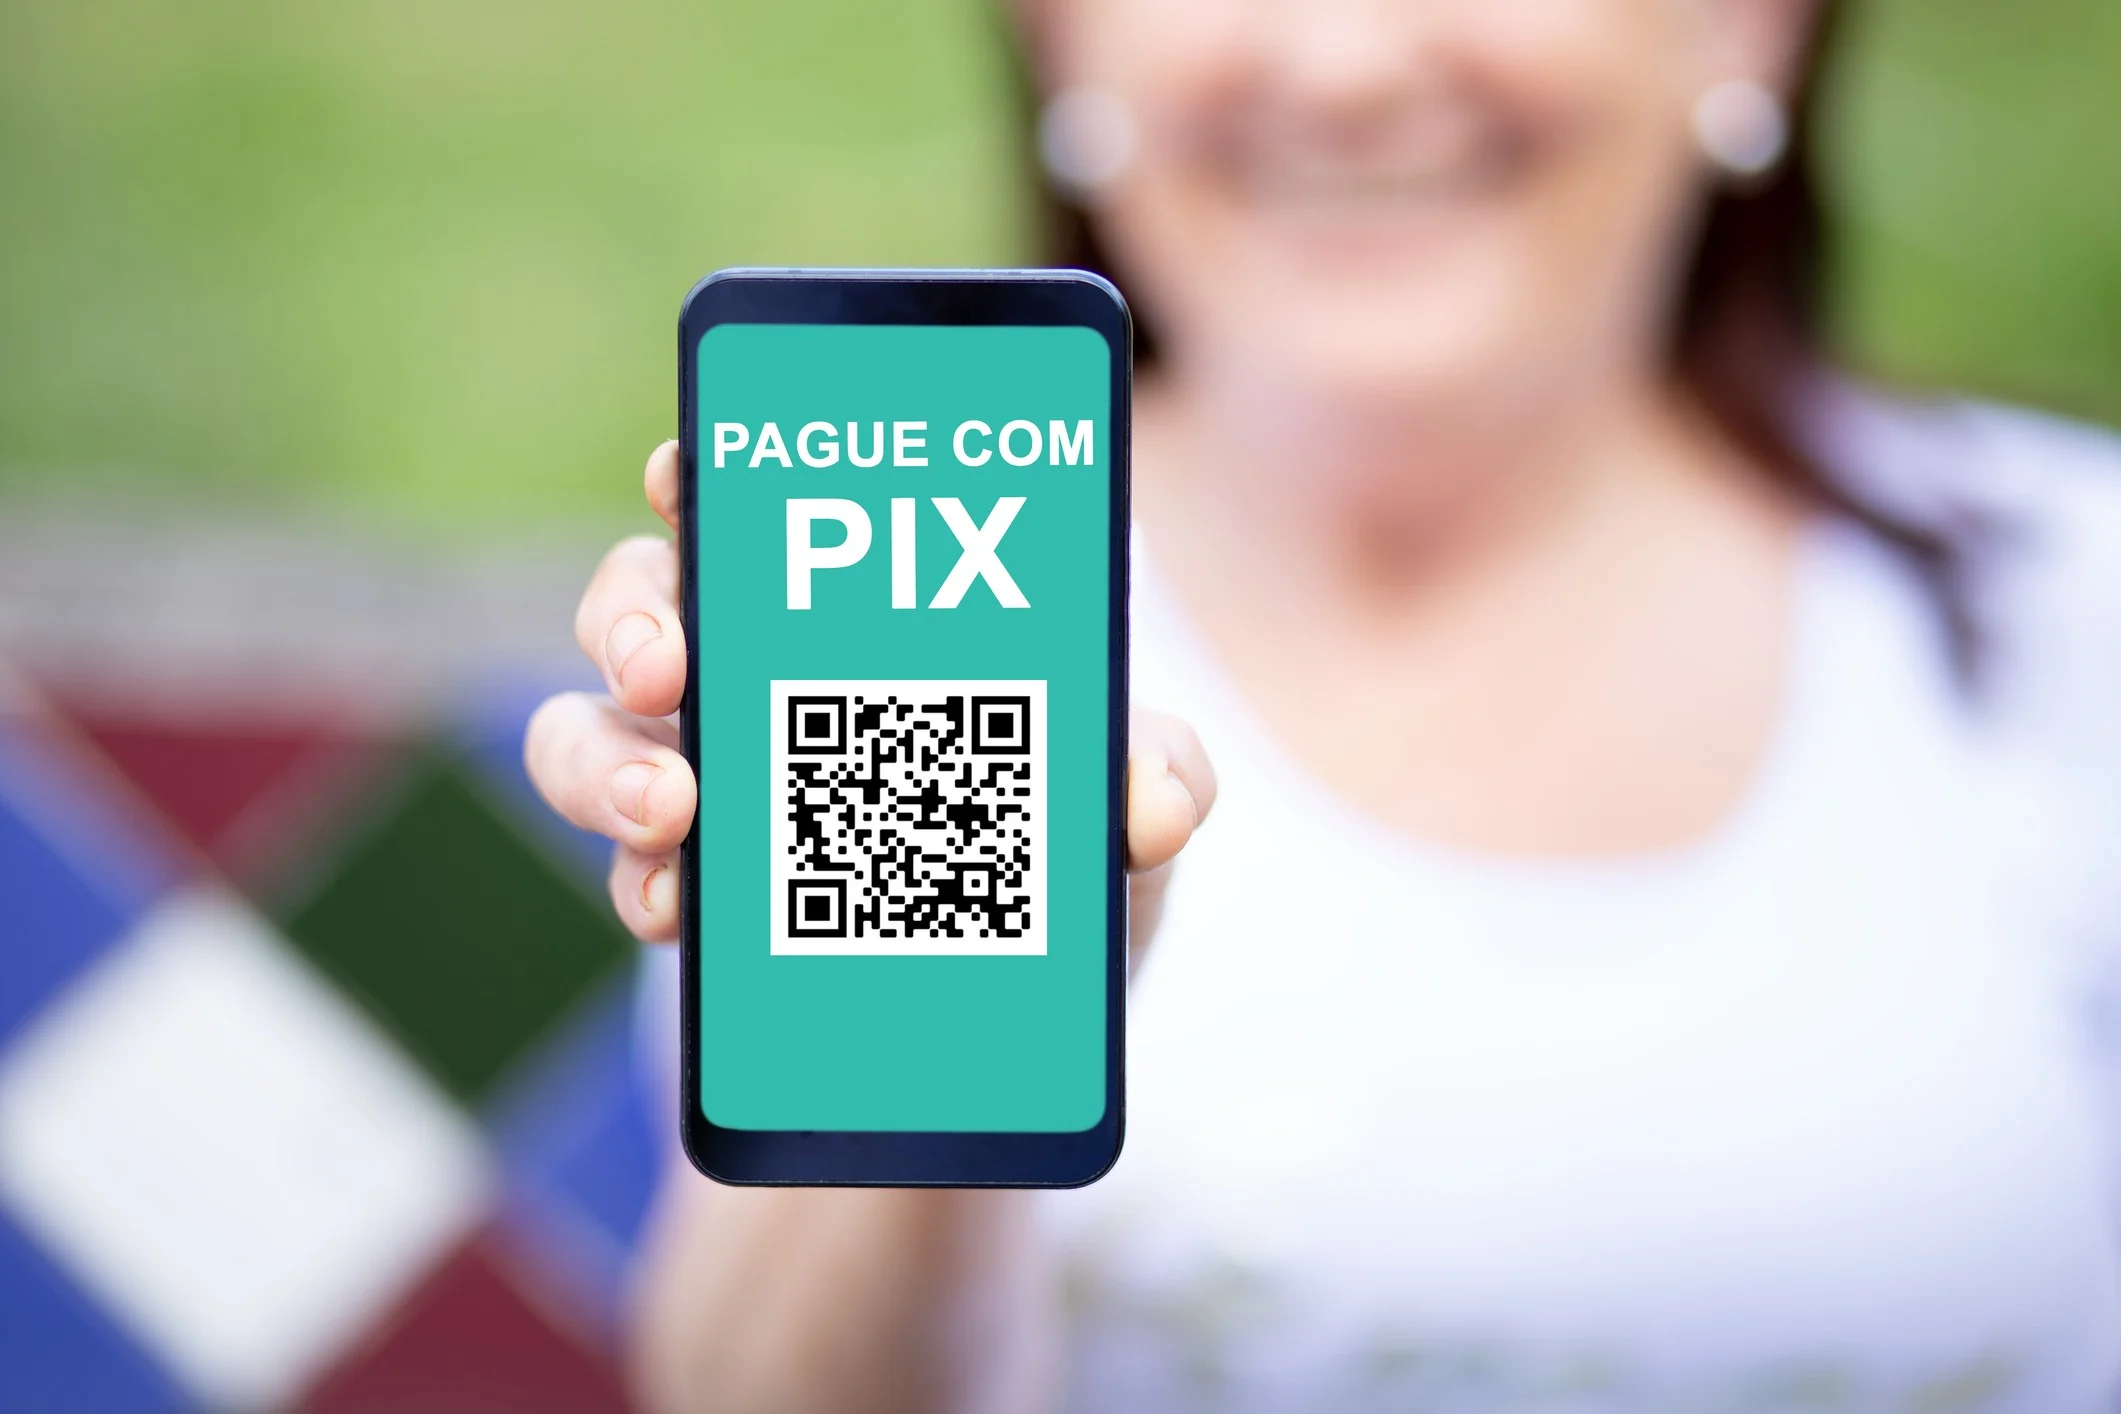 Pix Cobrança com Vencimento: conheça o serviço e as vantagens de usar o Pix para pagamentos programados